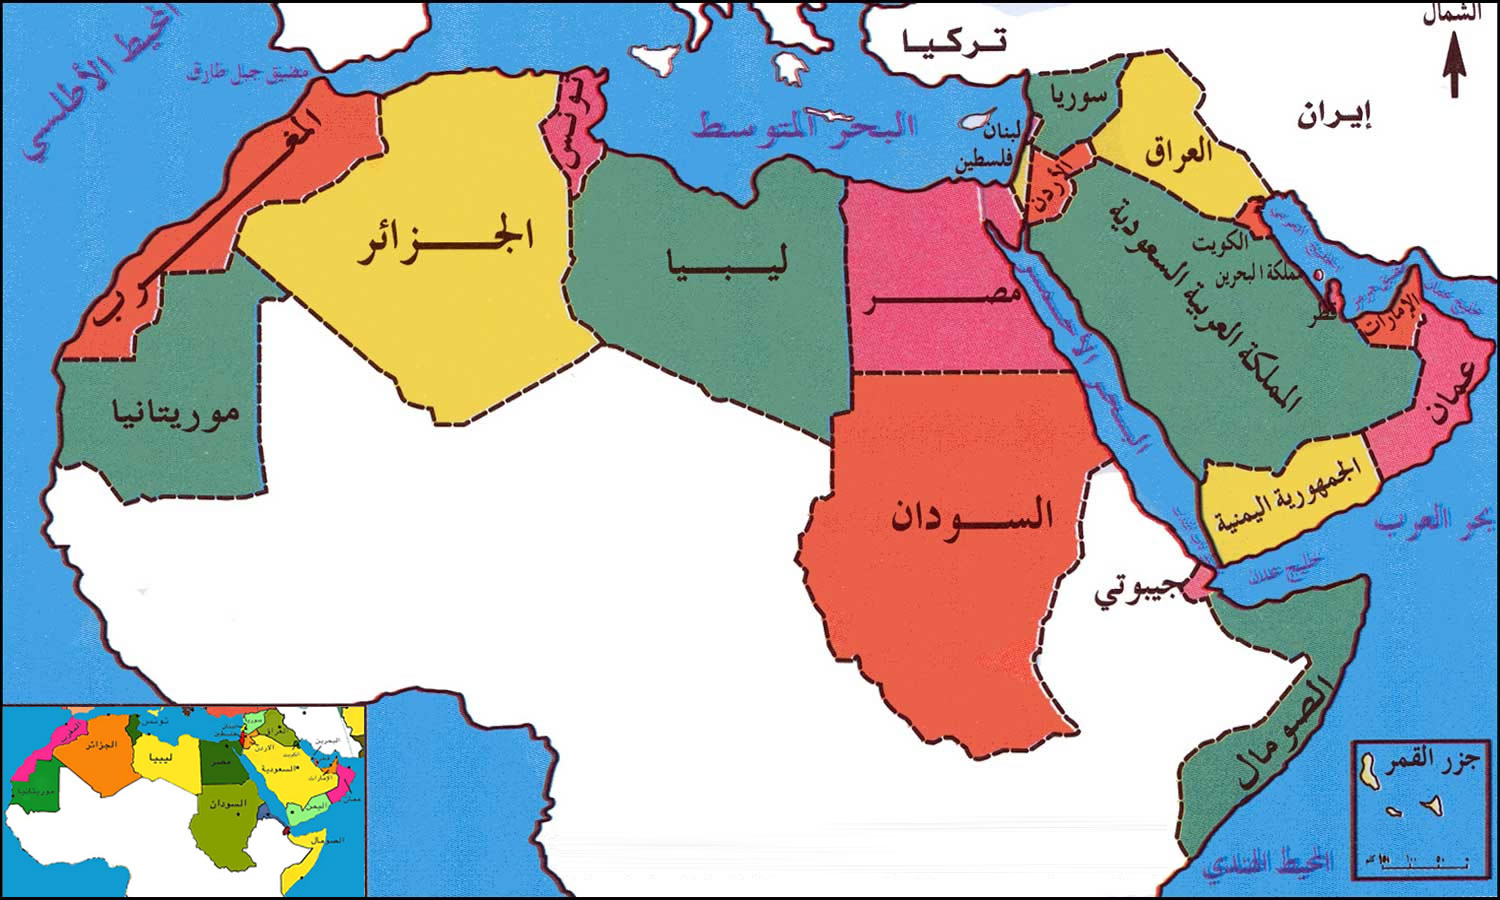 carte geographique du monde arabe